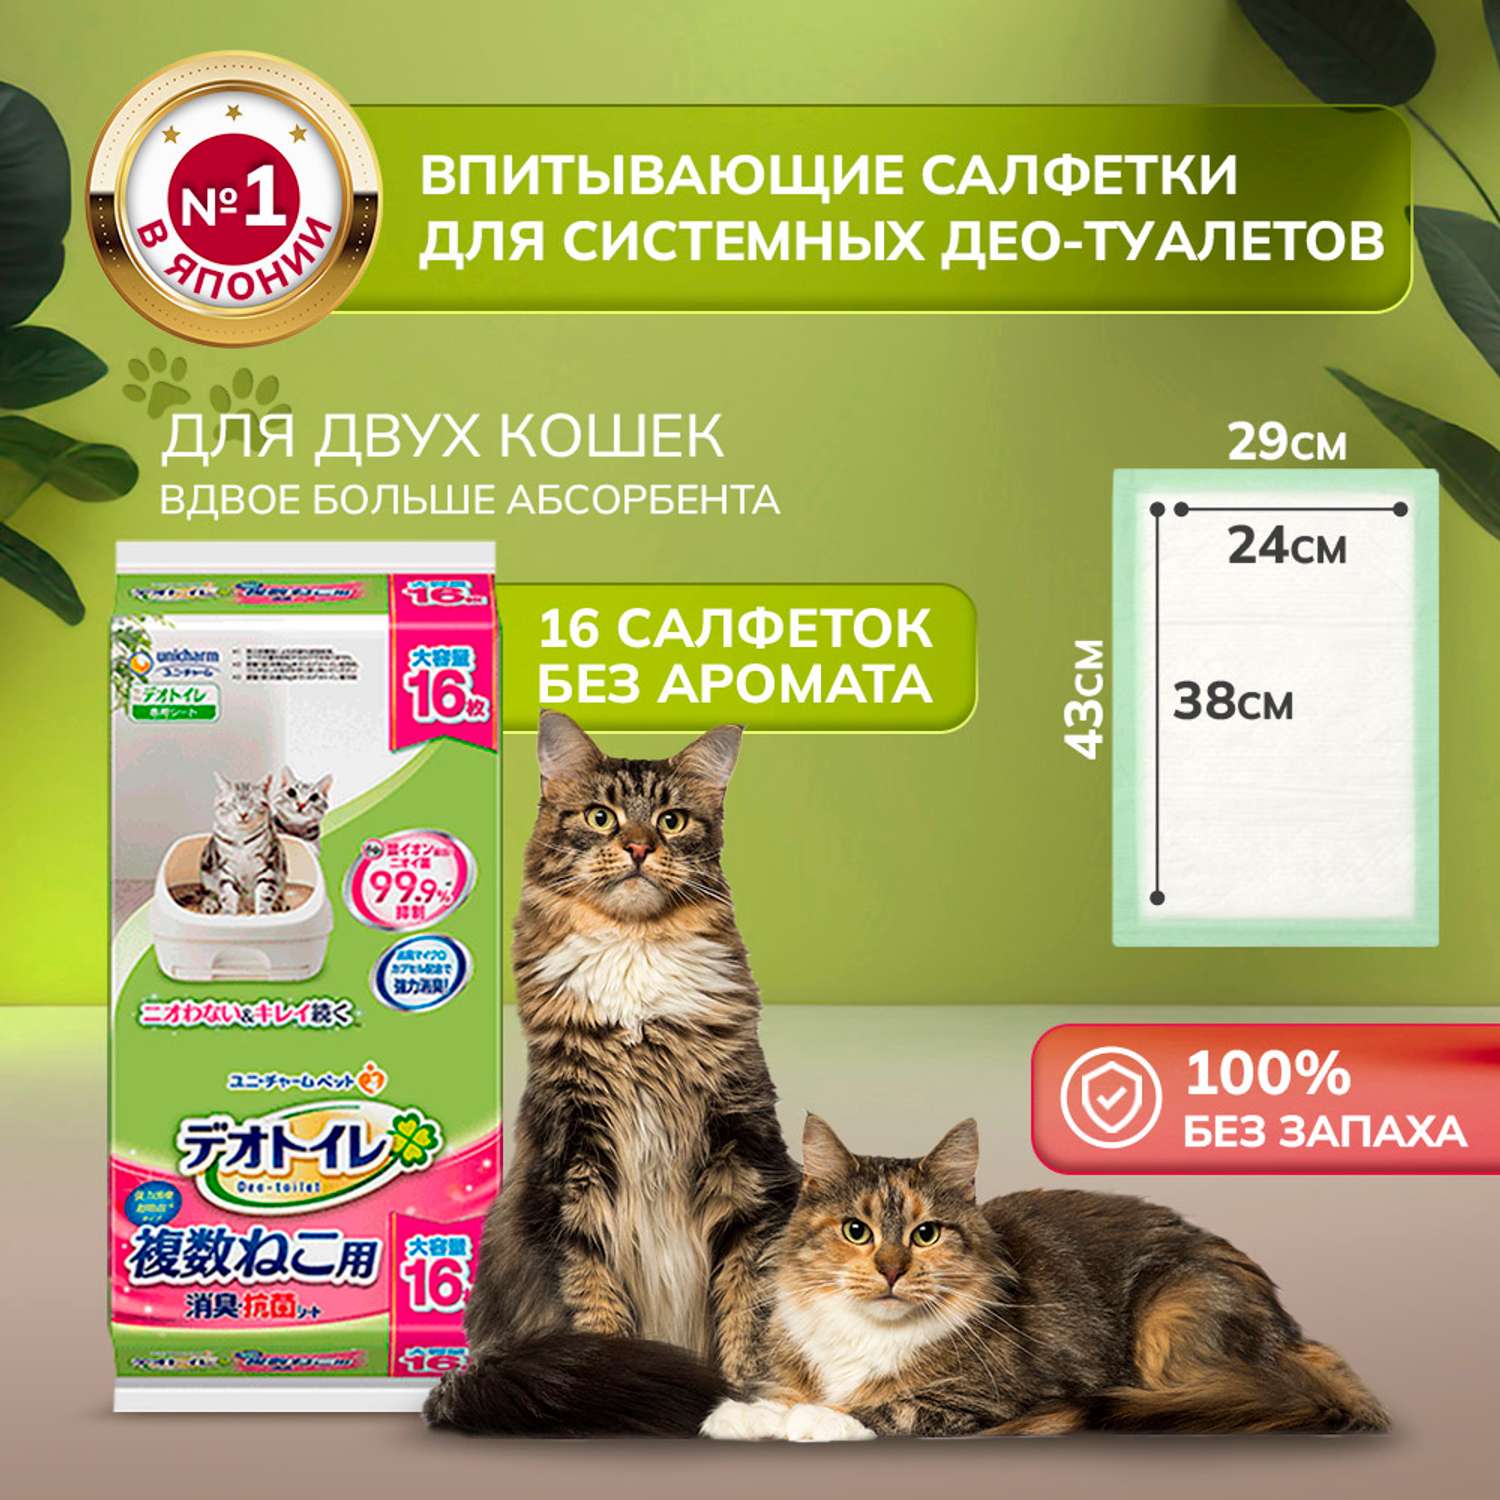 Антибактериальная салфетка Unicharm DeoToilet дезодорирующая для cистемных туалетов для кошек 16шт - фото 1